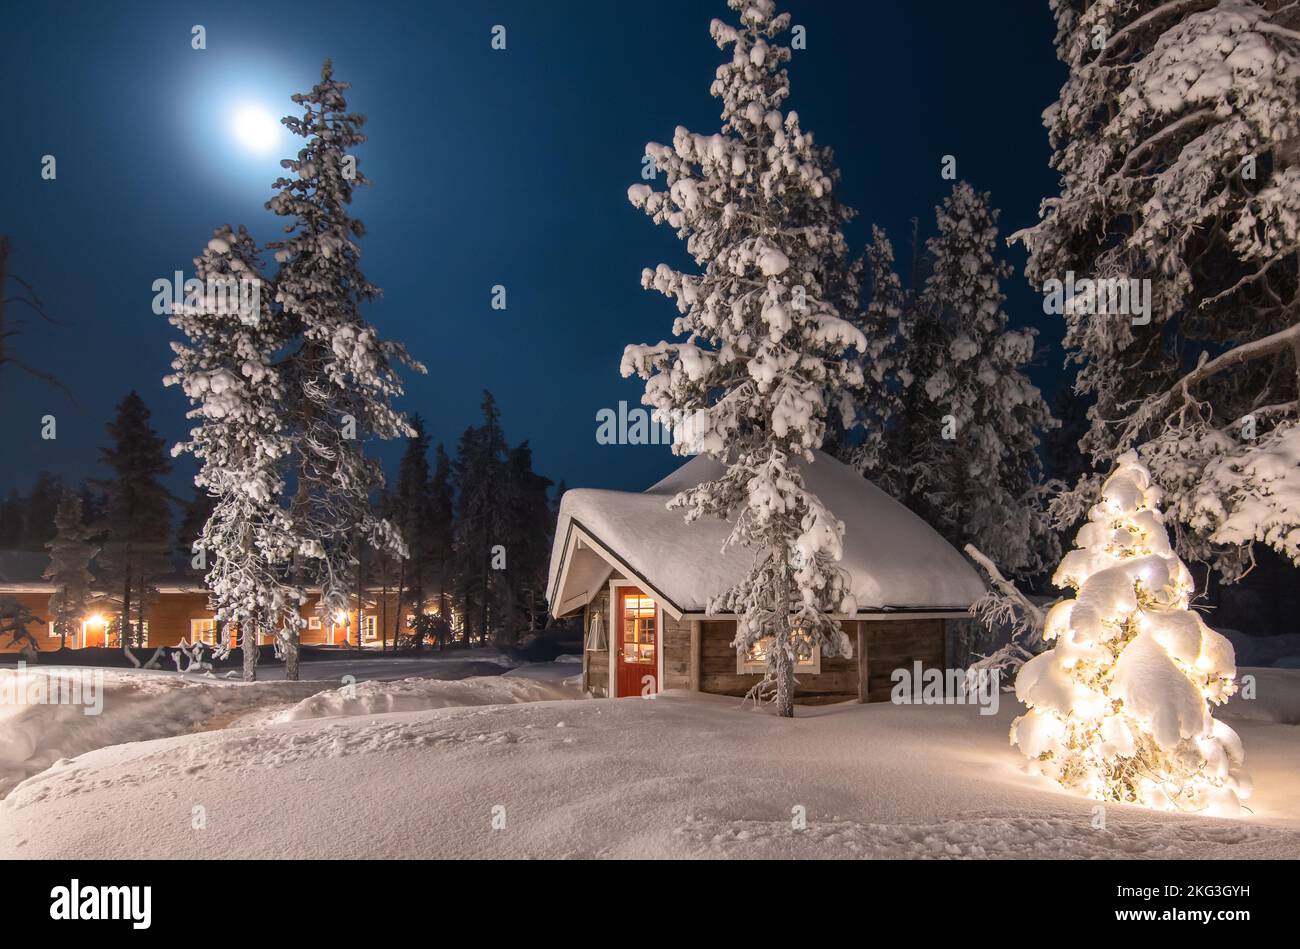 Invierno al aire libre y escena de Navidad con cabaña de madera en el bosque. Paisaje forestal invernal en luna llena, Finlandia, Laponia. Foto de stock